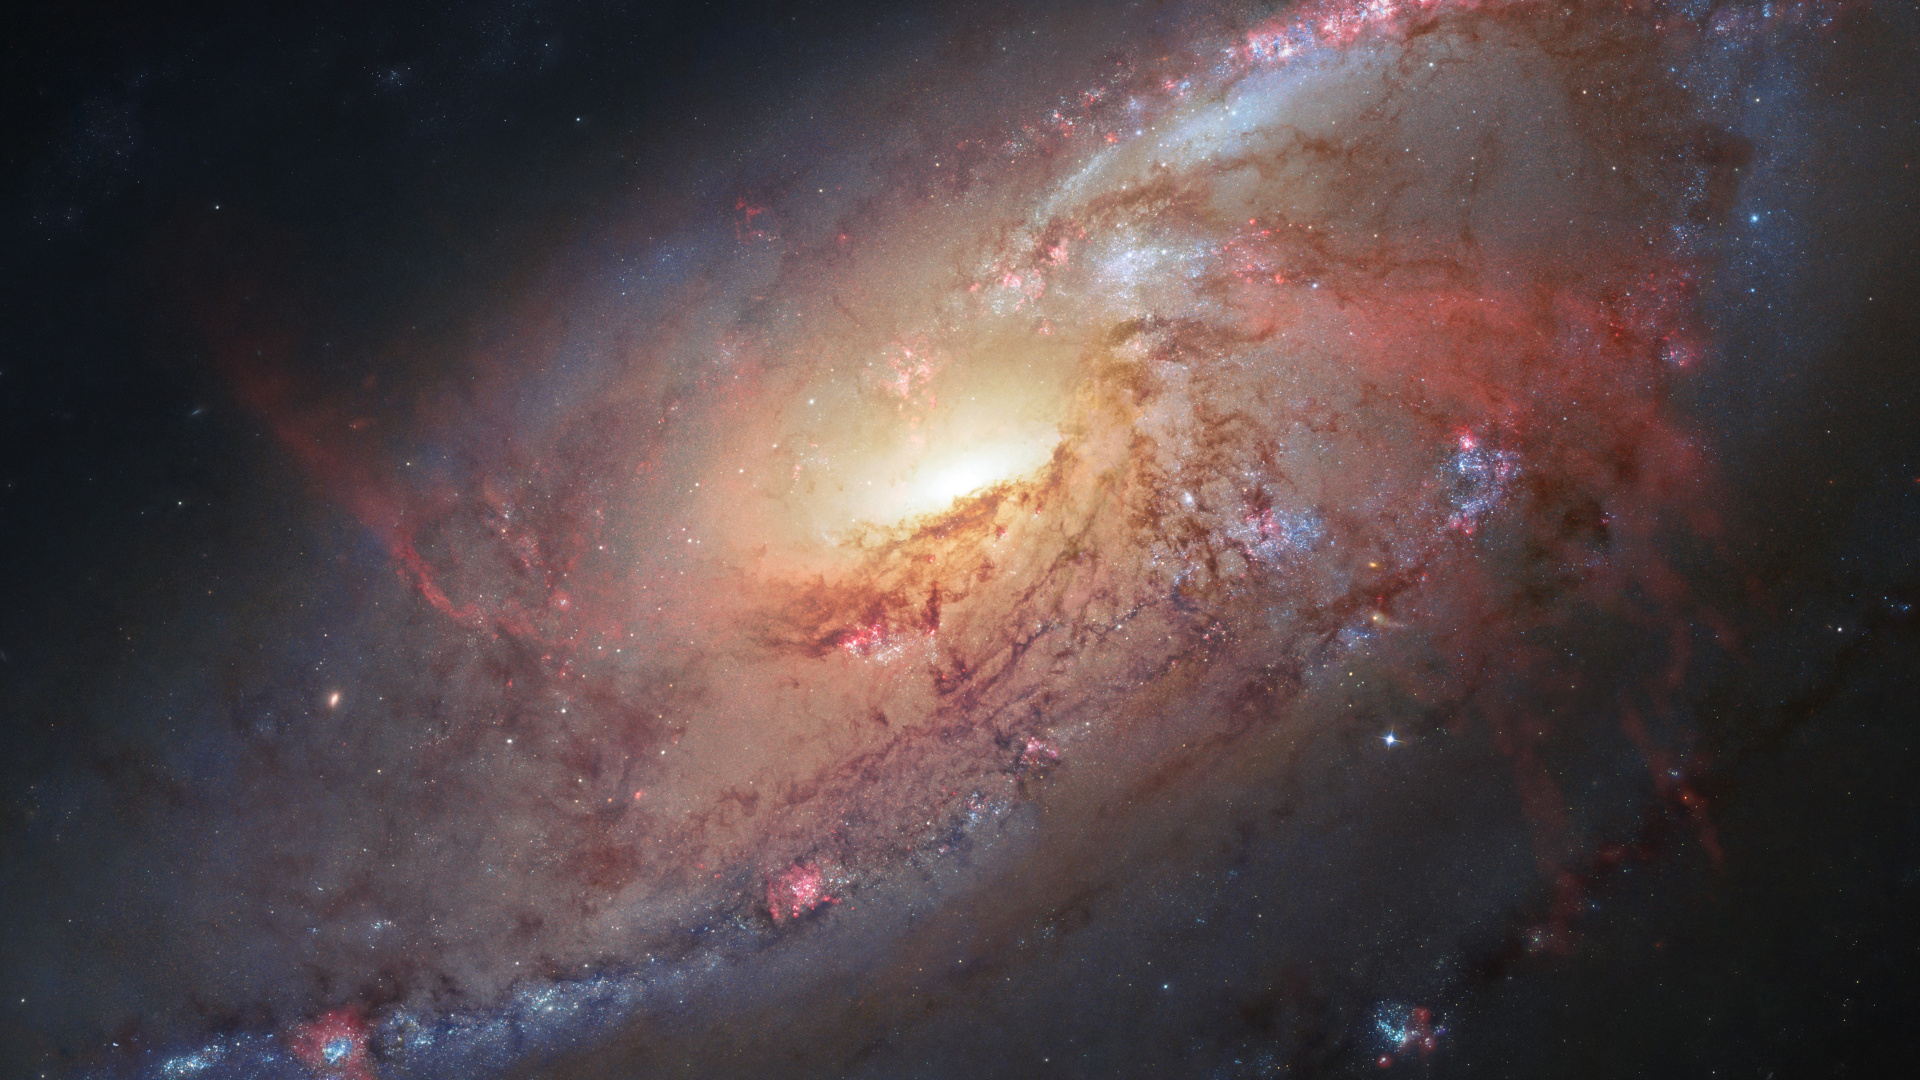 梅西耶 106, 哈勃太空望远镜, 螺旋星系, 外层空间, 气氛 壁纸 1920x1080 允许